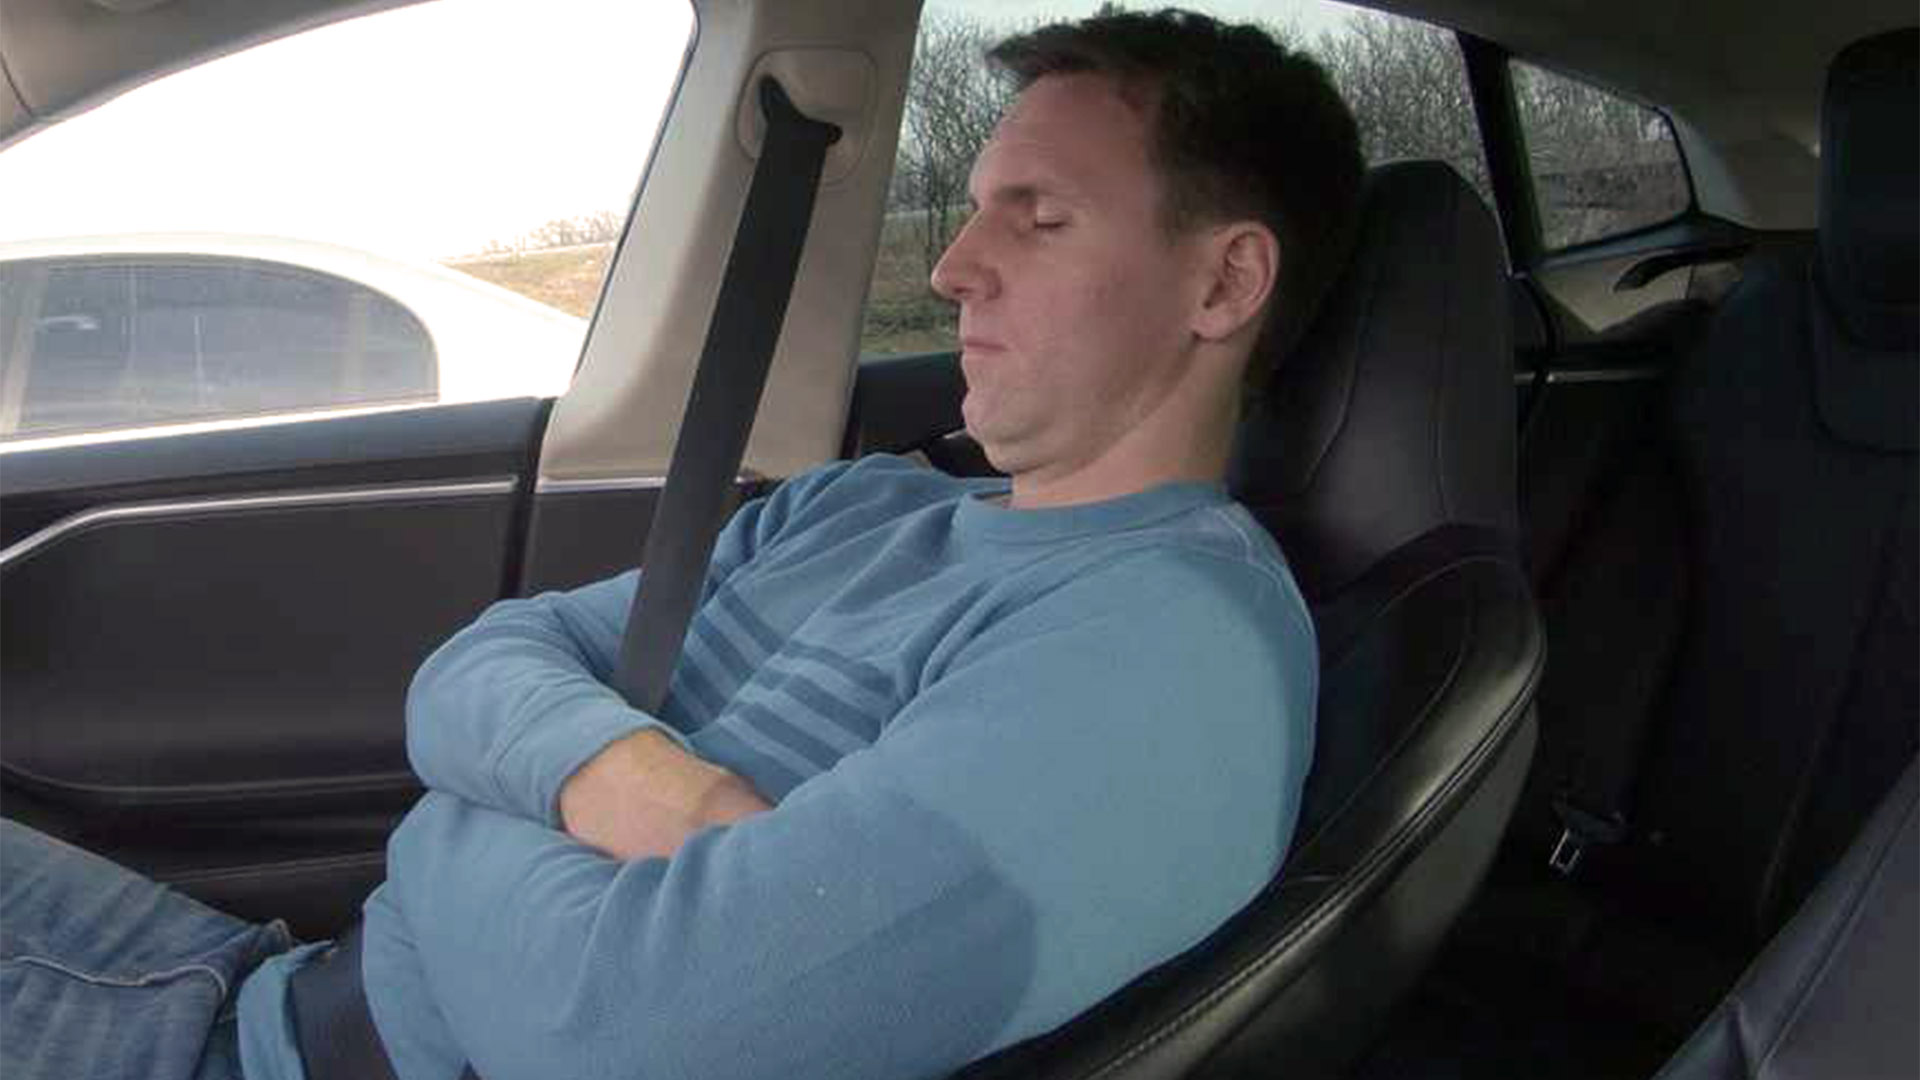 El asiento reclinado impide que el cinturón de seguridad actúe y ante un impacto suele ocasionar que el cuerpo pase por debajo de la banda pélvica